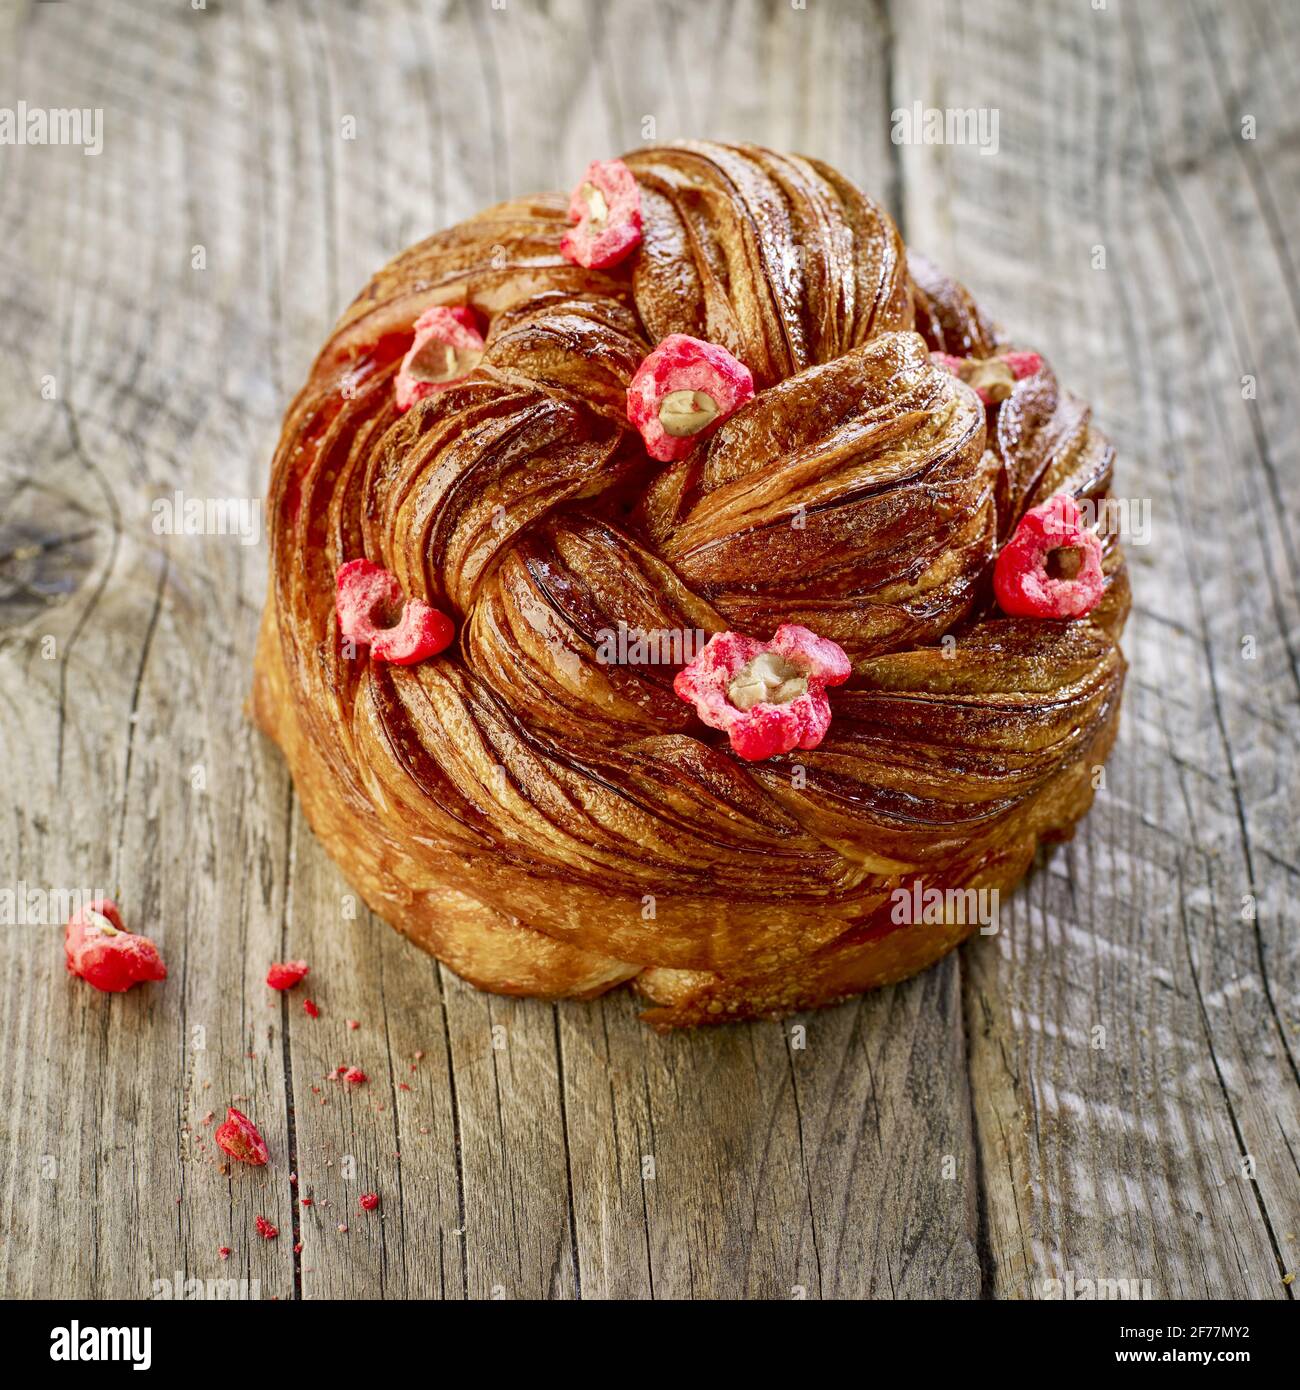 France, Paris, boulangerie et pâtisserie Arlette et Colette, brioche tressée à la praline rose Banque D'Images